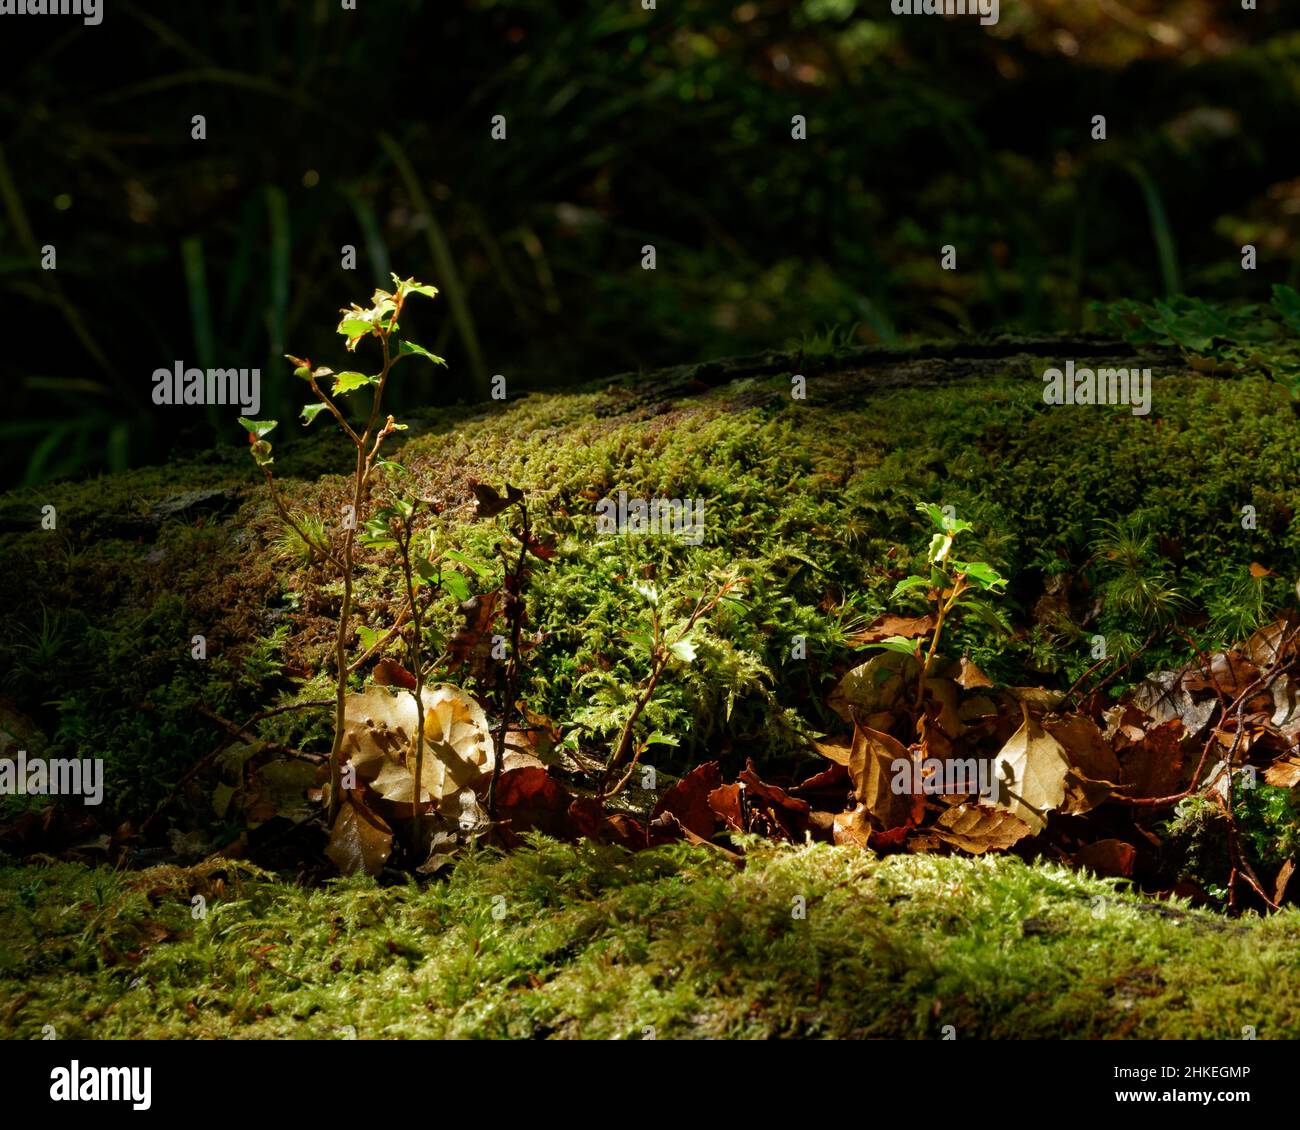 Semis de hêtre provenant d'un hêtre mort tombé, parc national de Nelson Lakes, île du sud, Aotearoa / Nouvelle-Zélande Banque D'Images